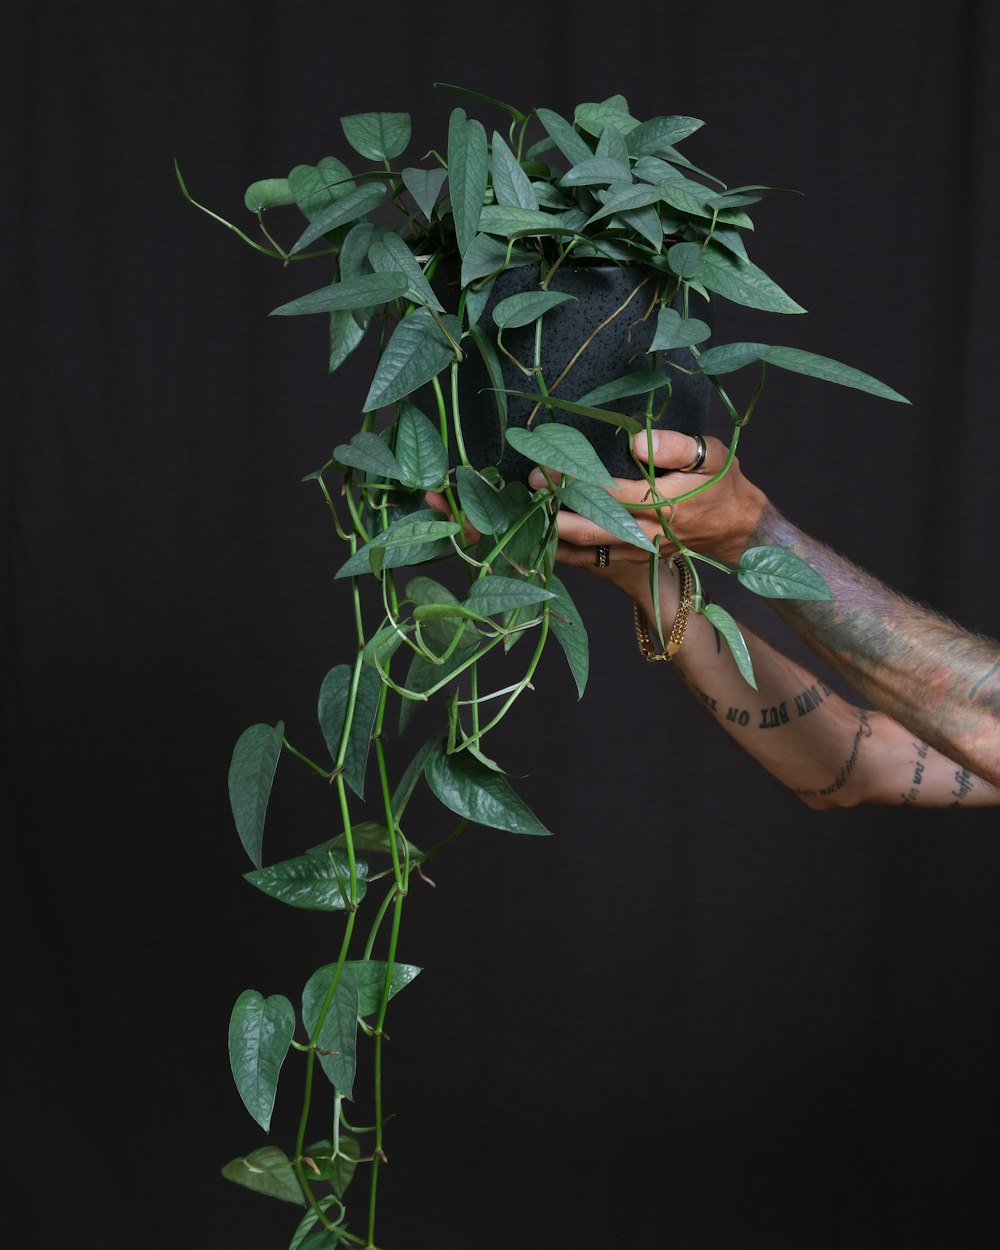 Una persona sosteniendo una planta con muchas hojas